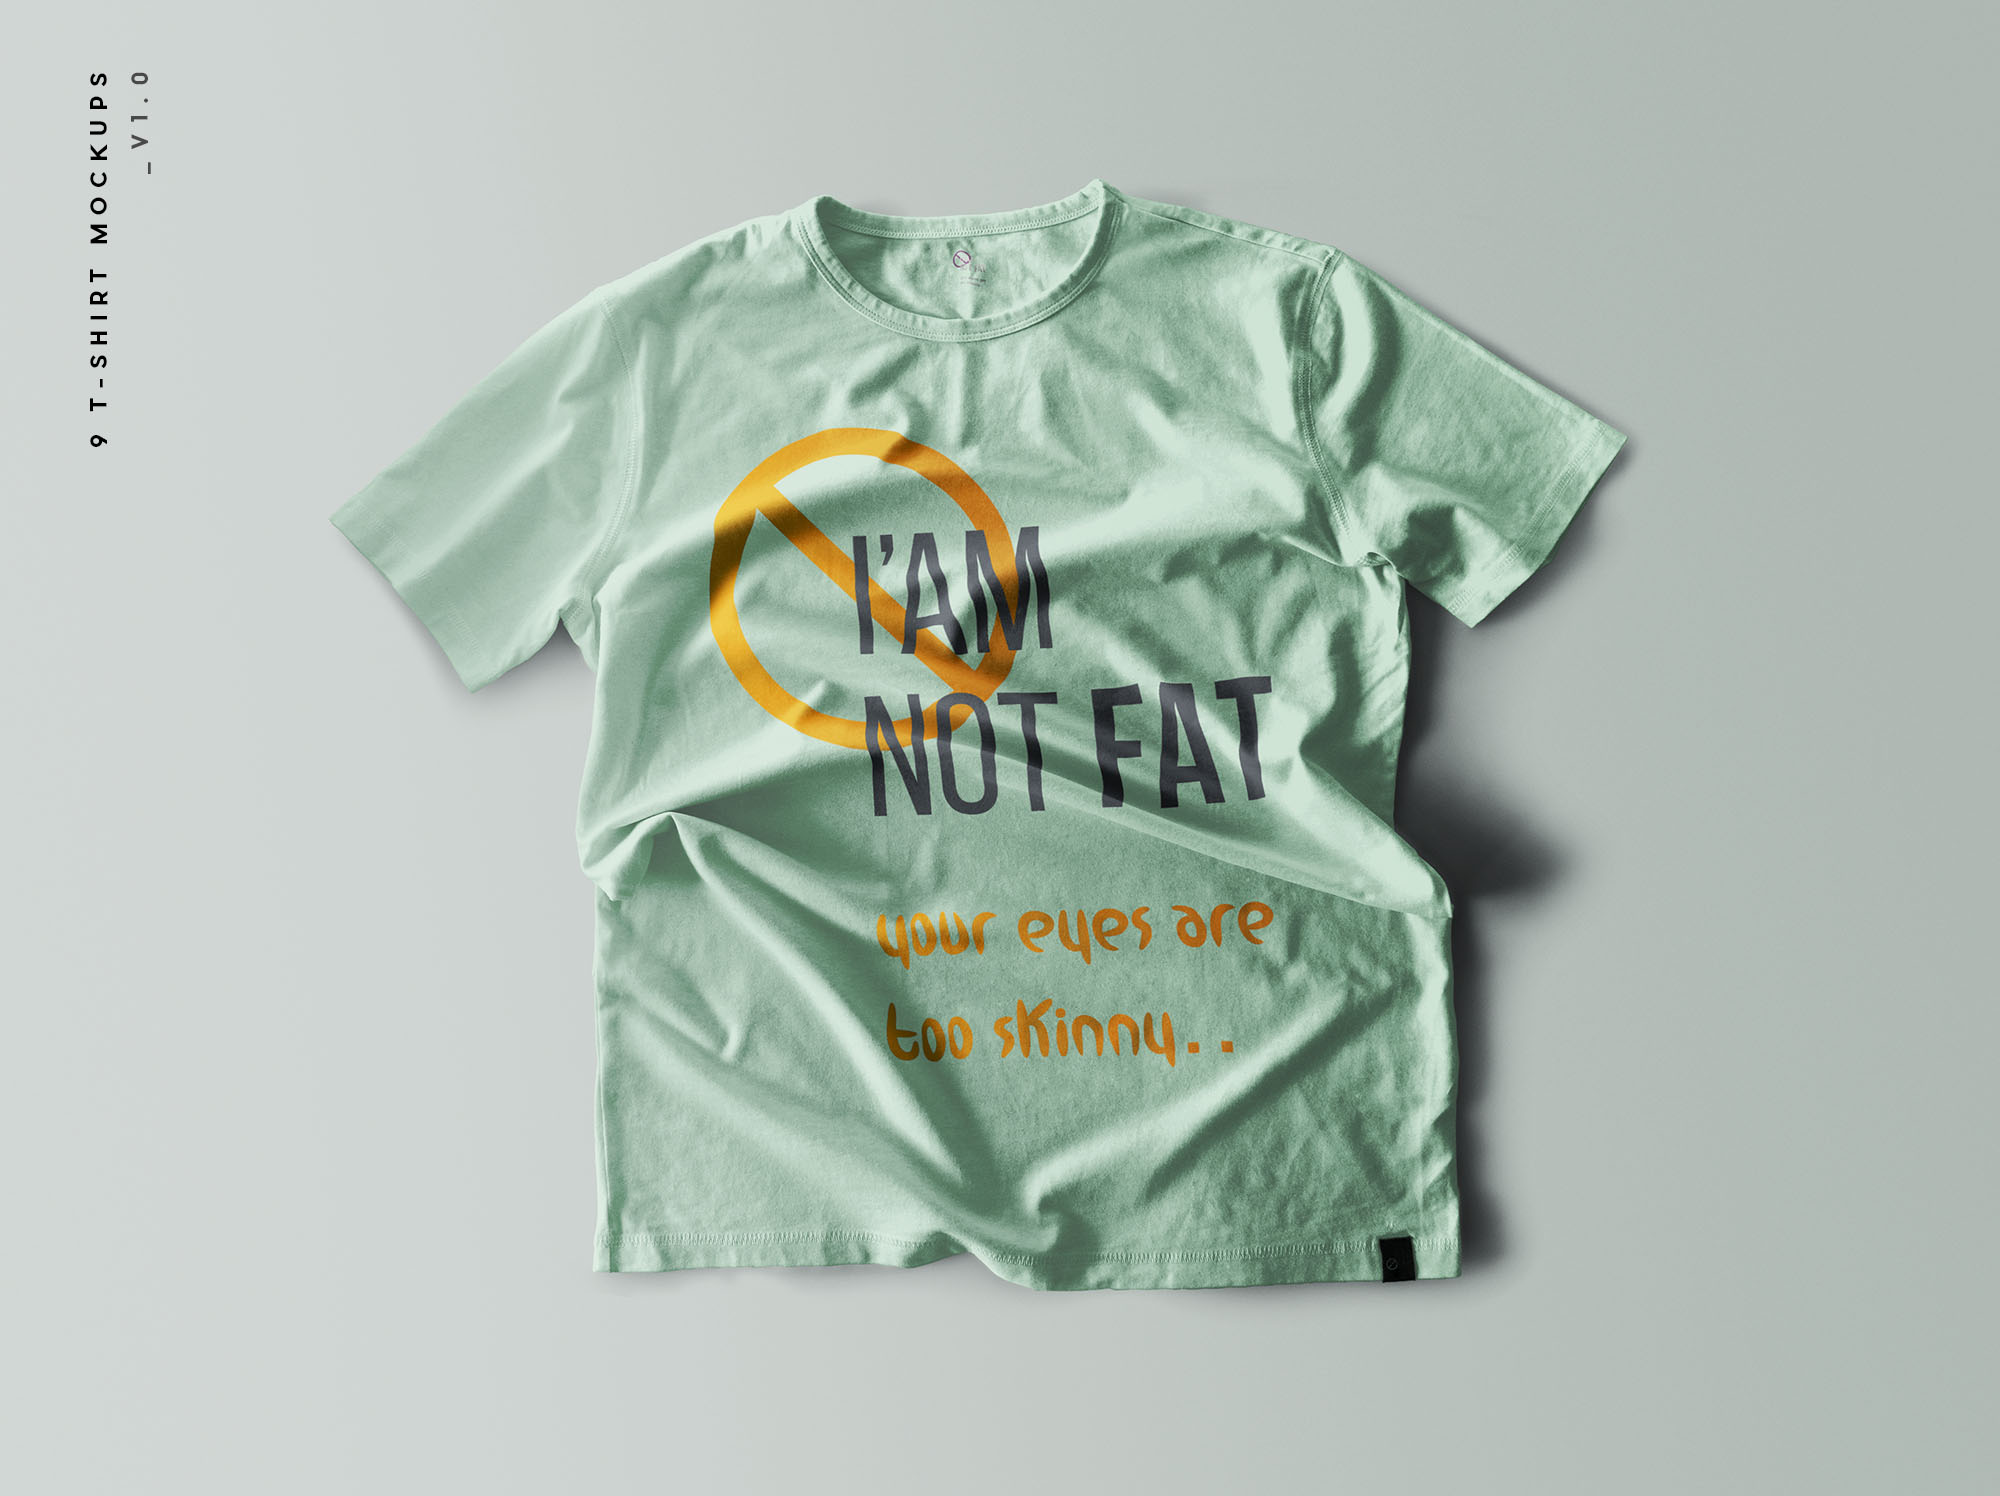 9 个褶皱T恤设计效果图样机 9 T-Shirt Mockups 样机素材 第11张